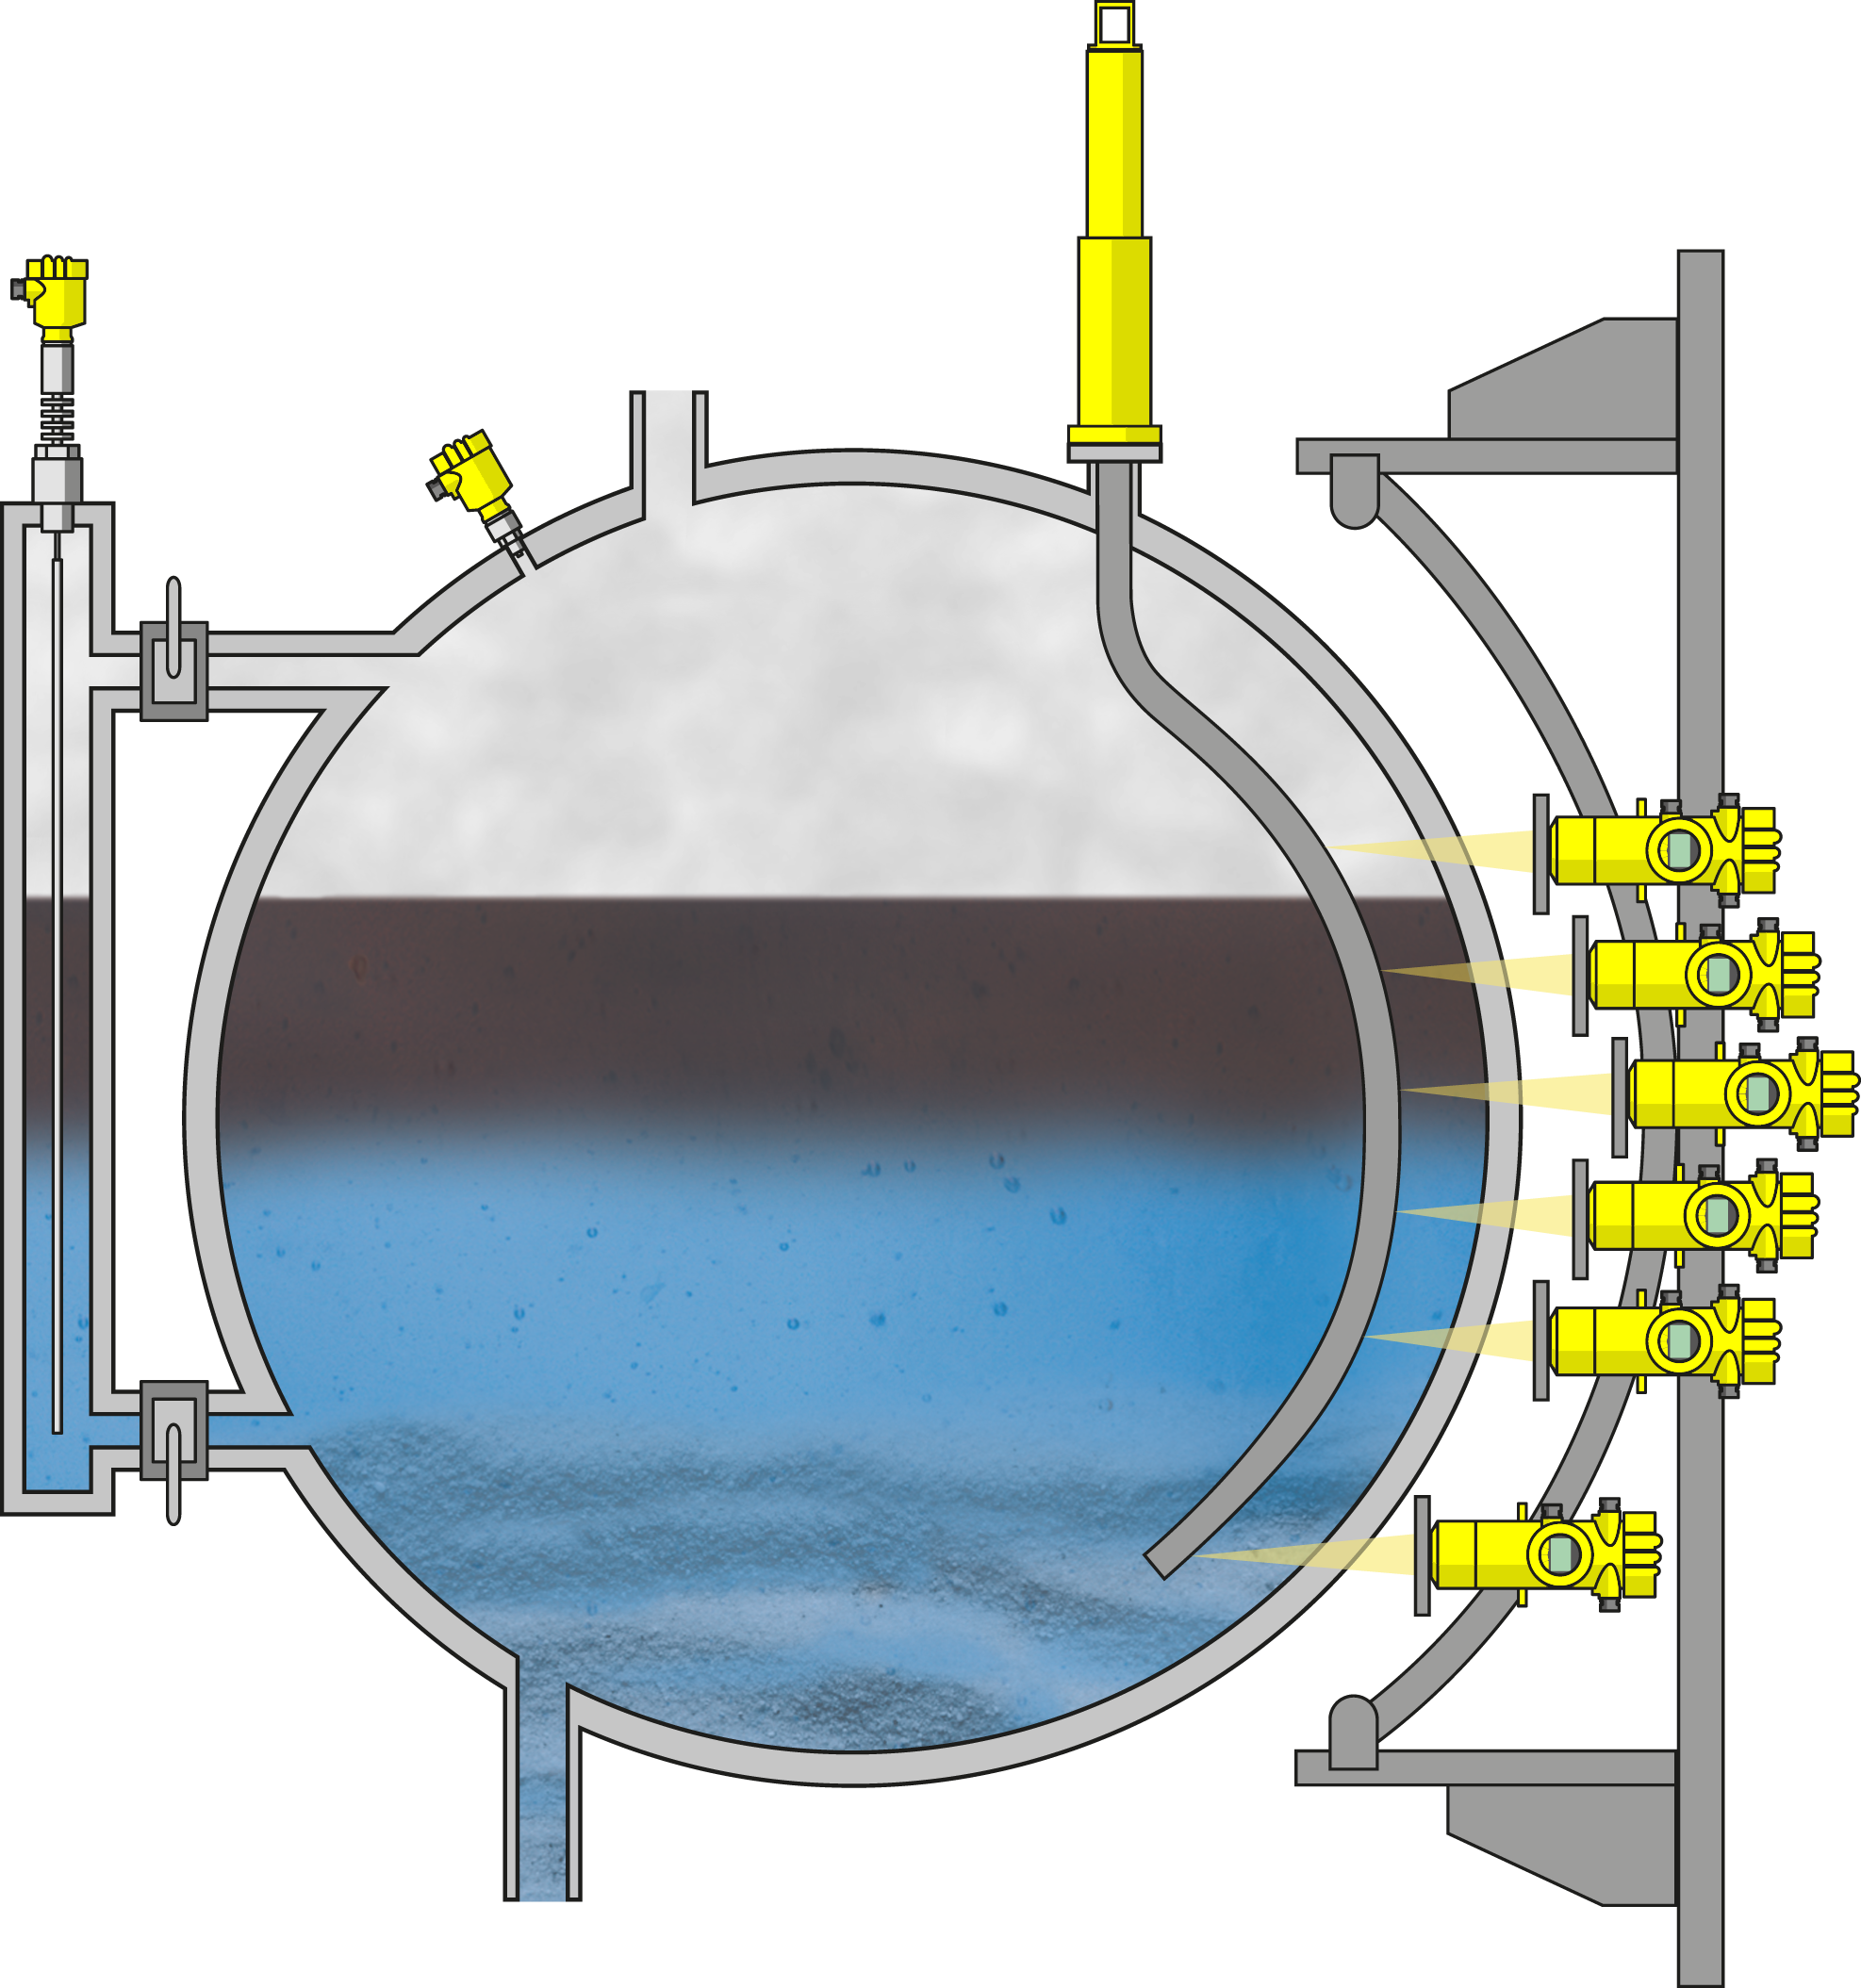 Misura di livello e di pressione nel separatore di petrolio